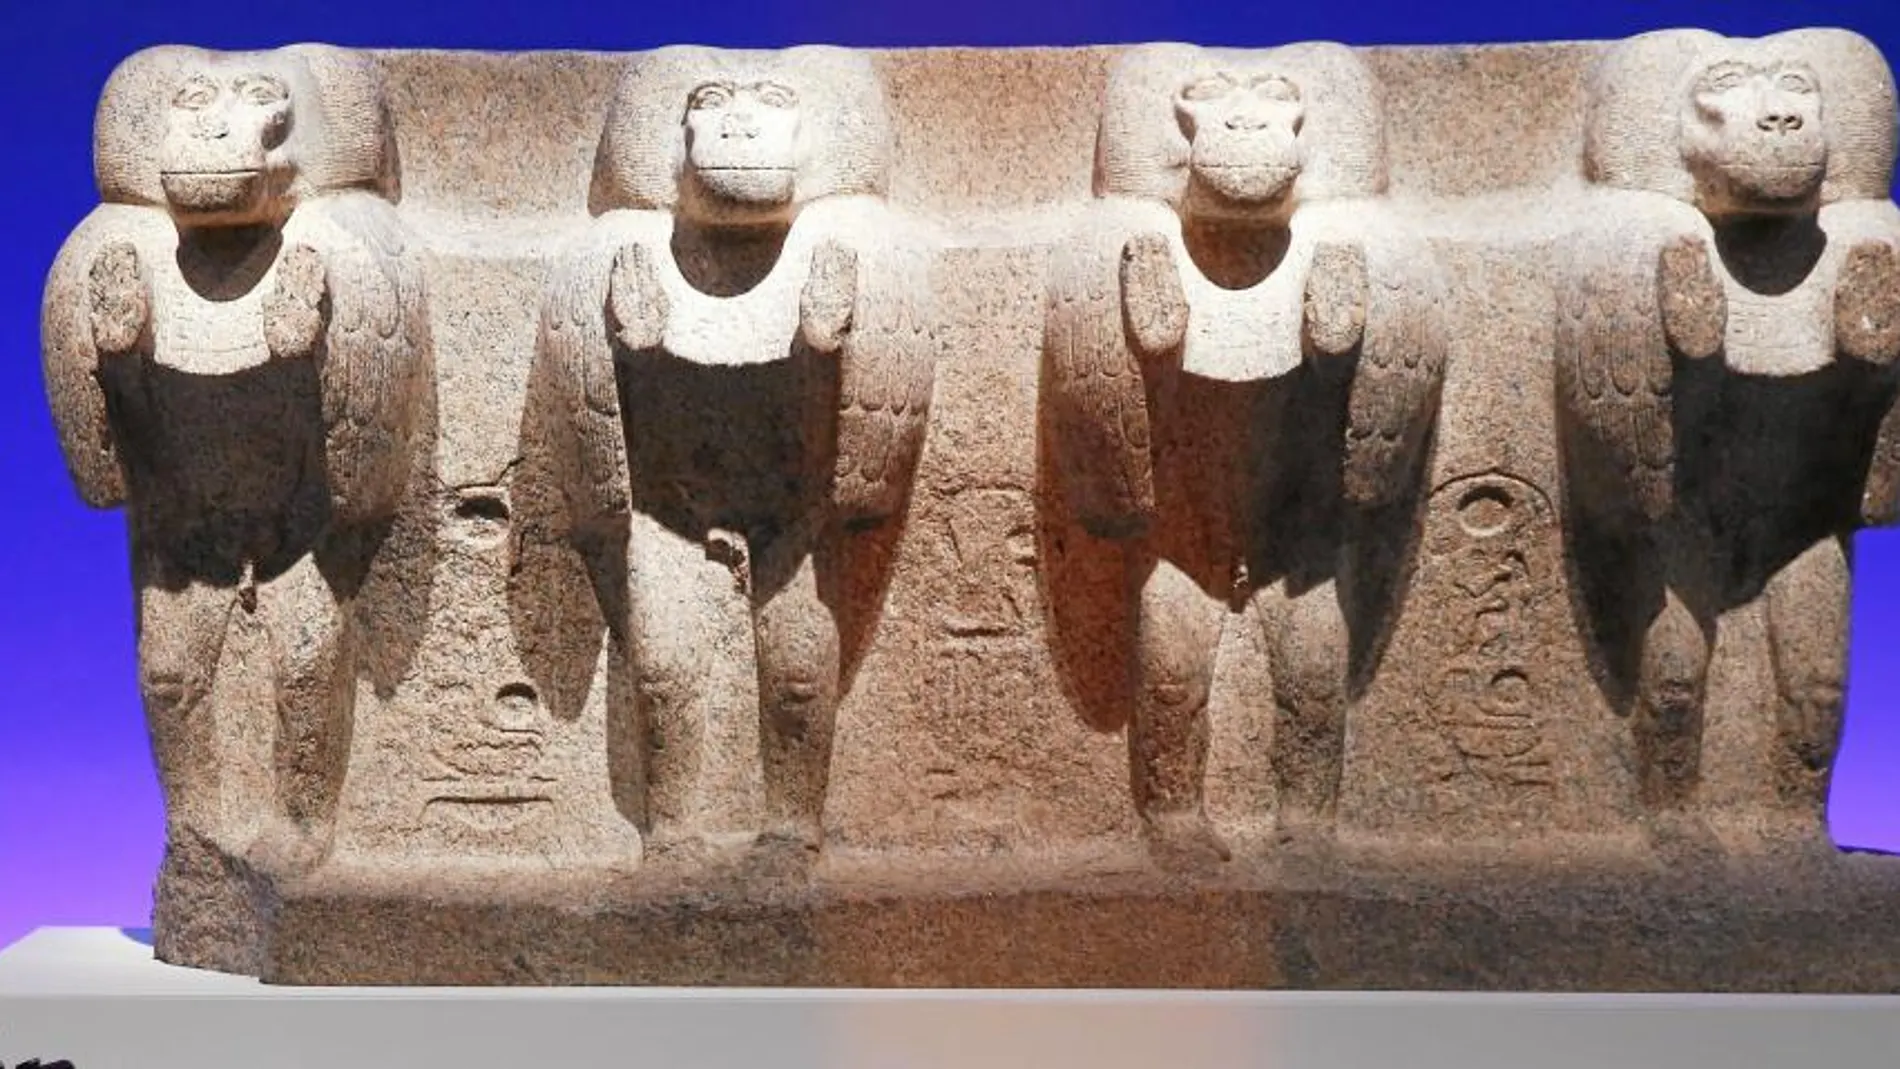 Es la base del obelisco de Luxor. Francia exhibía esta obra en la plaza de la Concordia, pero en 1836 la tuvieron que retirar y recluir a las salas del Louvre debido a la polémica que desató. La pudibunda sociedad de esa época no estaba preparada para ver unos babuinos tan bien dotados